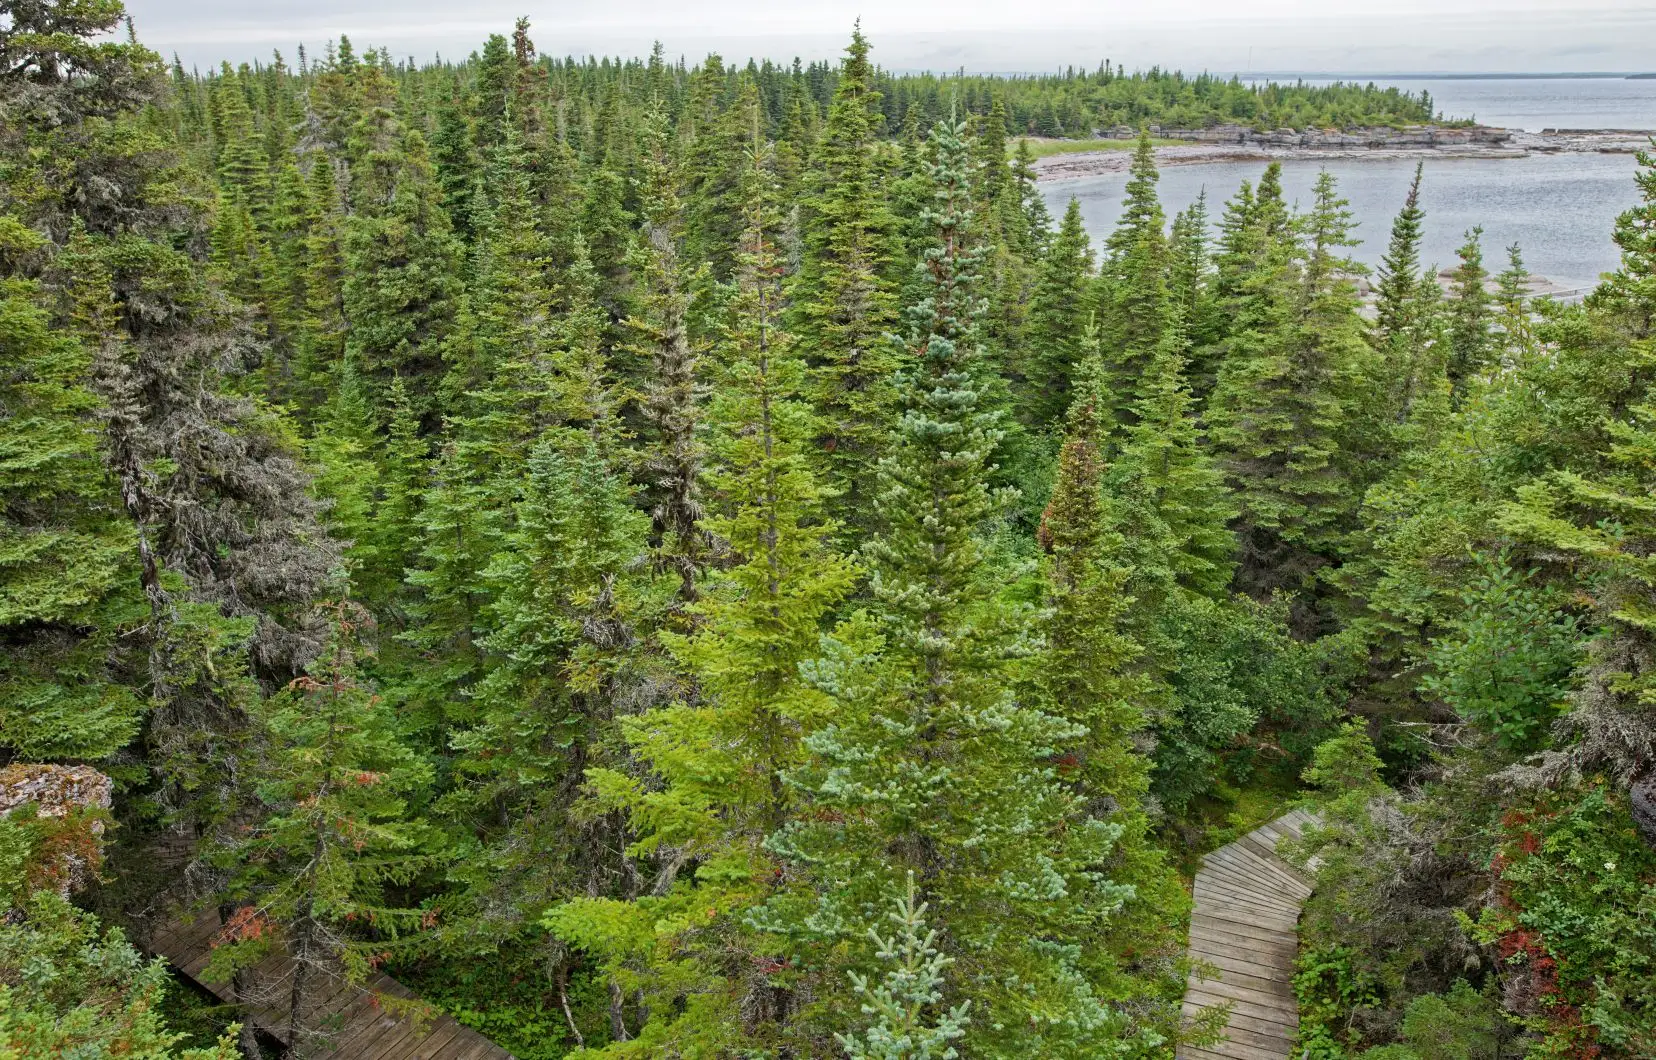 Comment accroître la résilience de nos forêts?